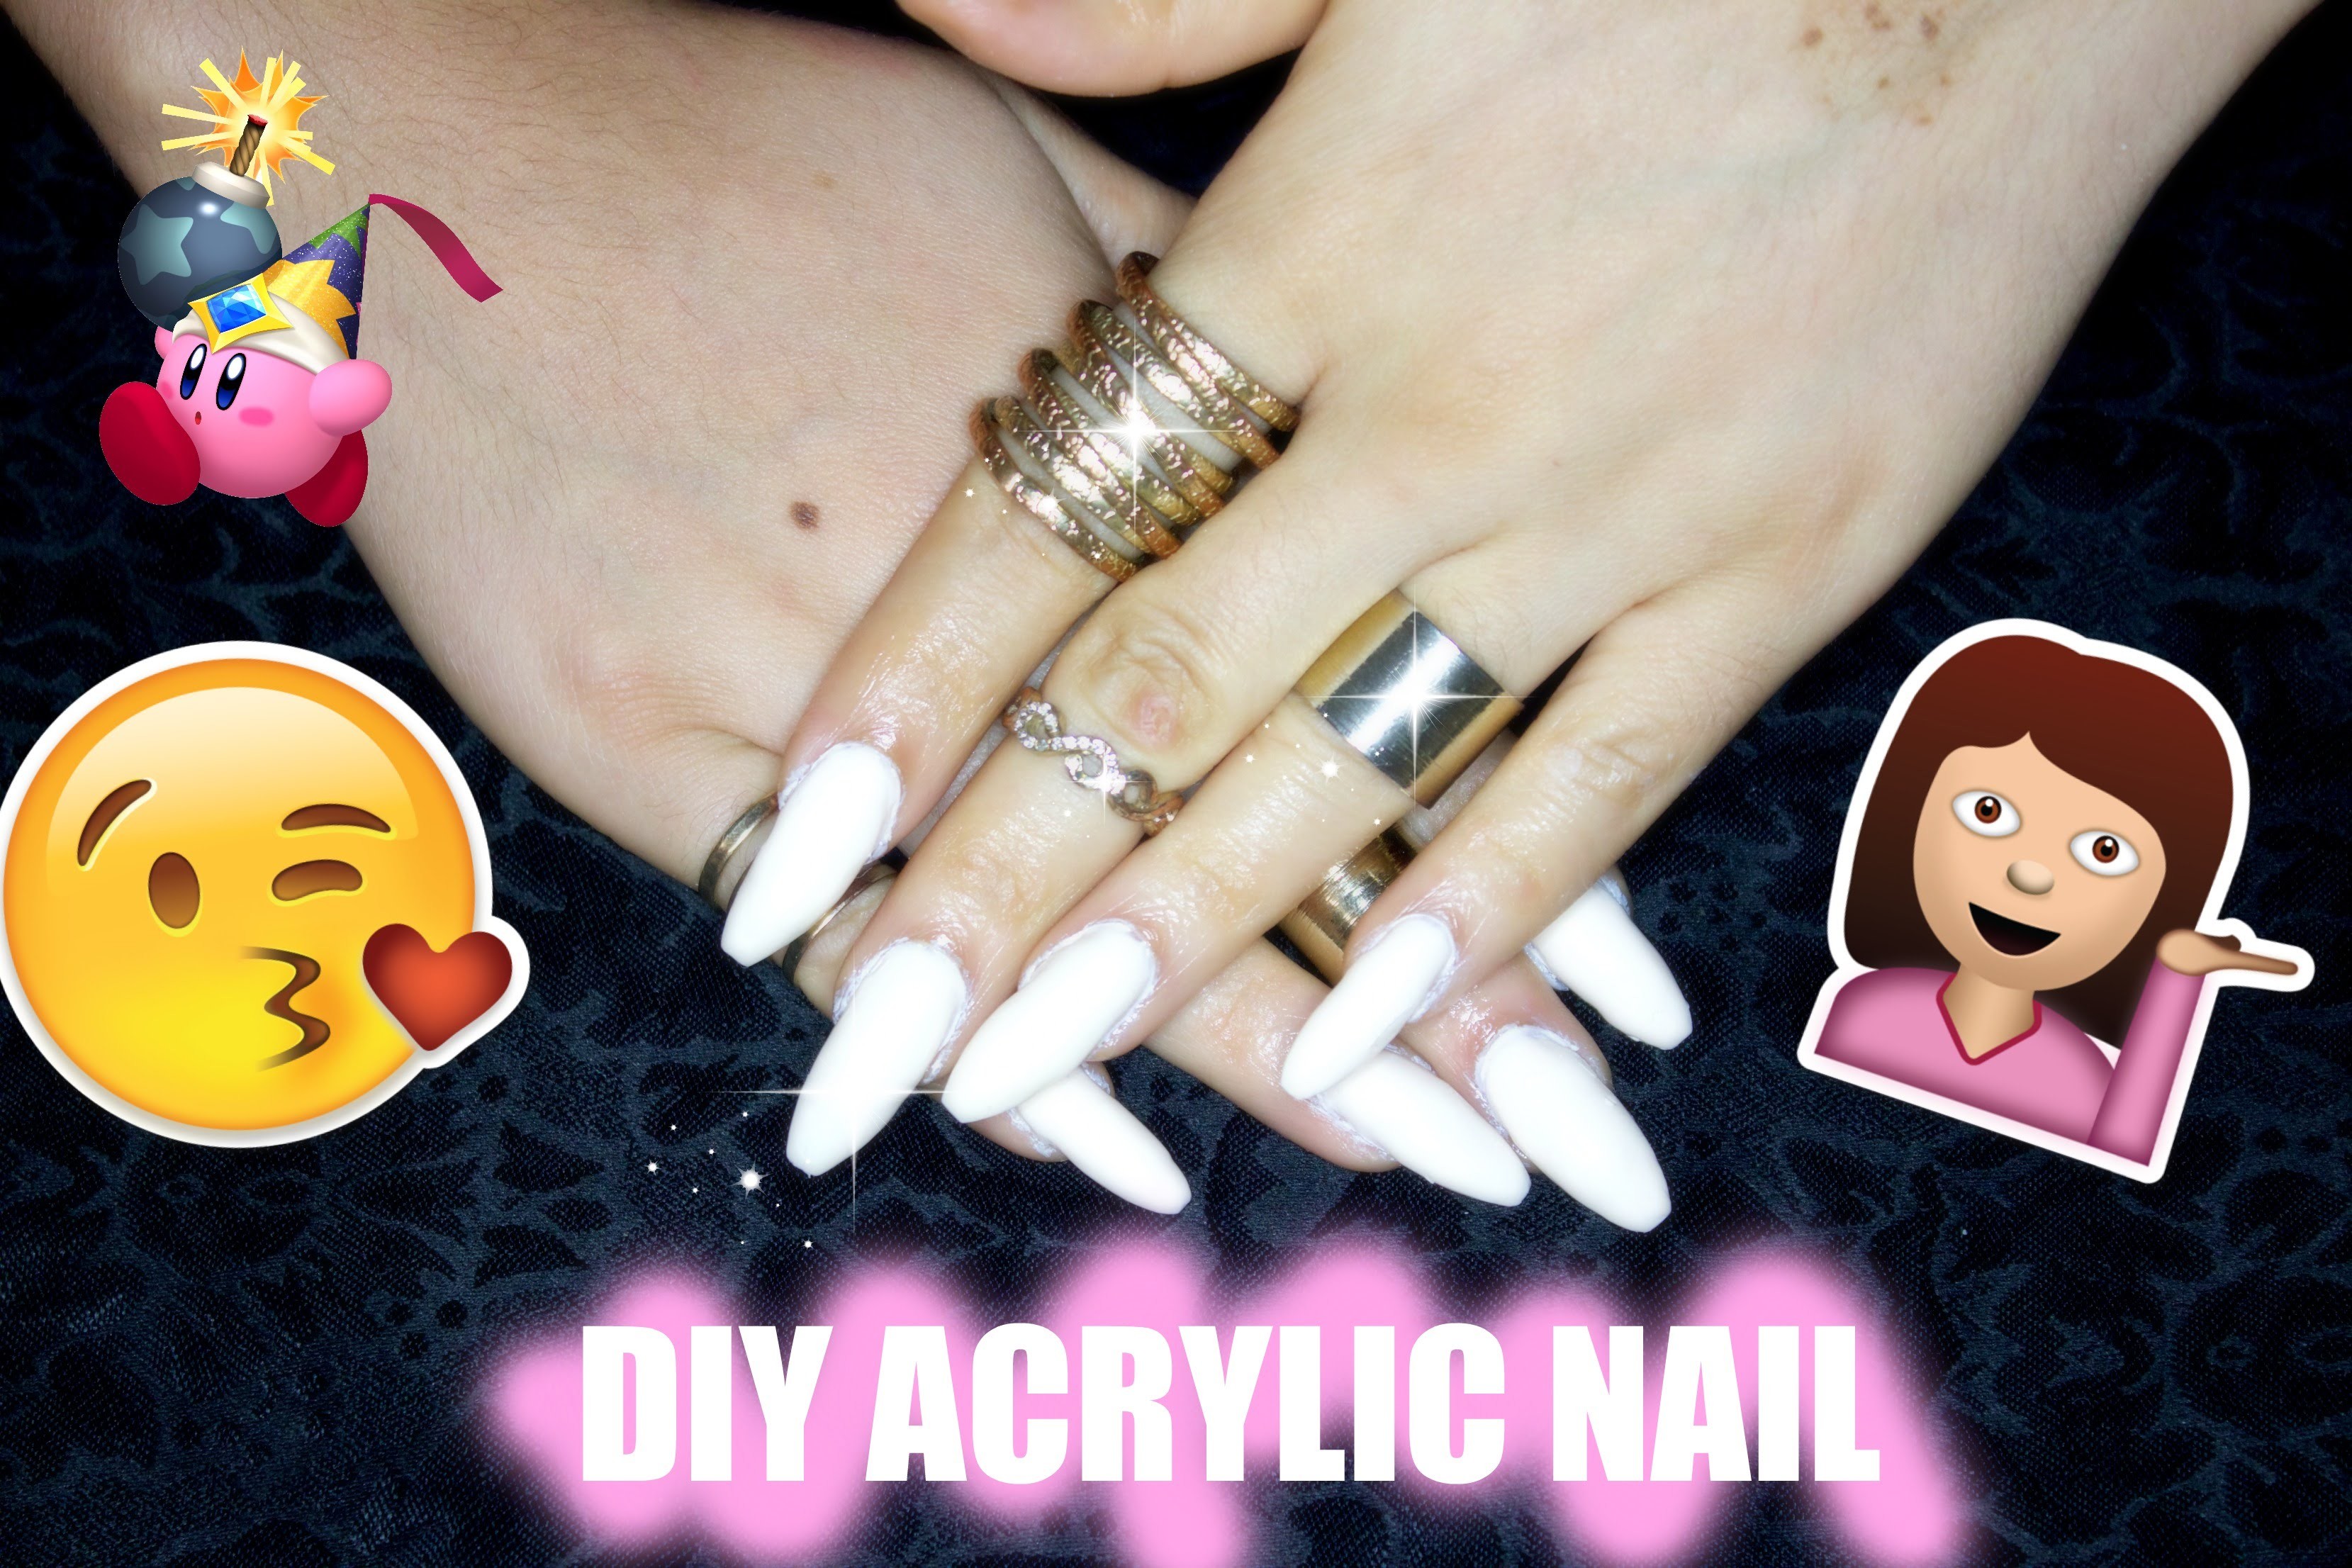 DIY Acrylic nails at home super Easy & Cheap, NAIL TUTORIAL